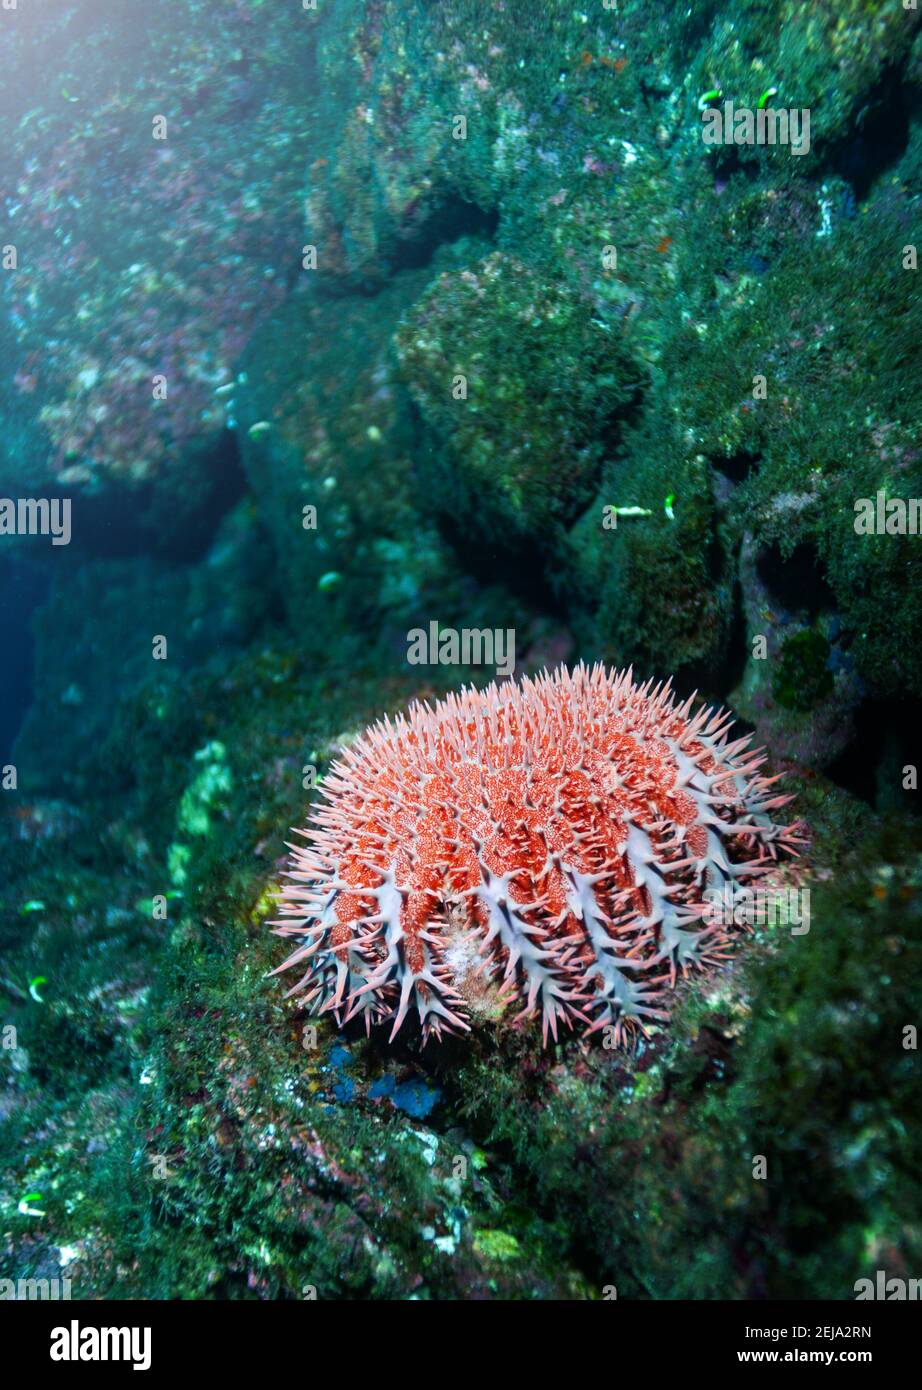 Ricci di mare closeup foto subacquea spinoso, animali globulari, echinodermi nella classe Echinoidea Foto Stock